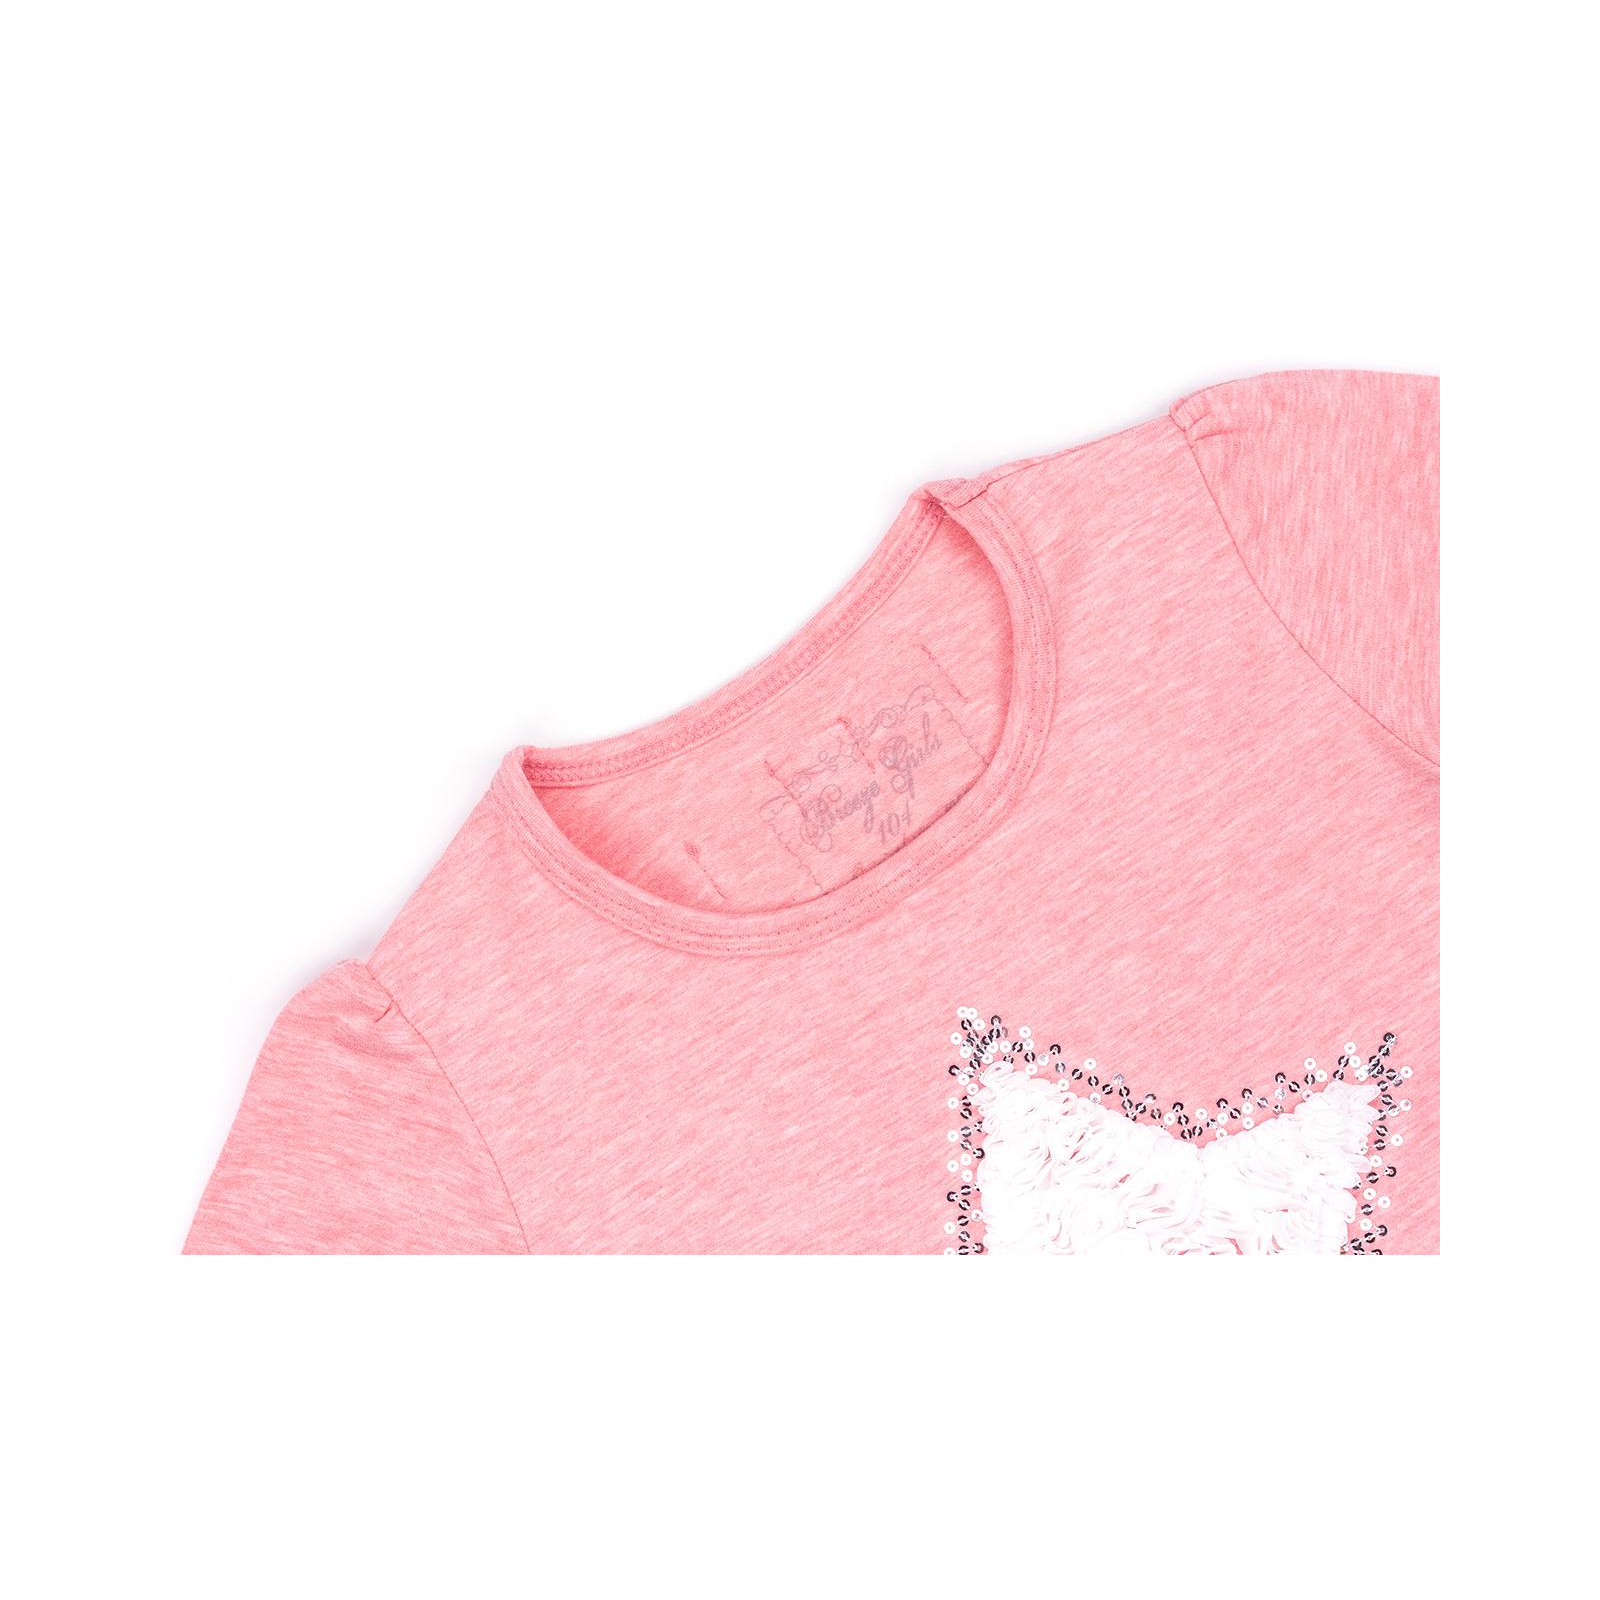 Кофта Breeze со звездой и оборкой (10536-110G-pink) изображение 3